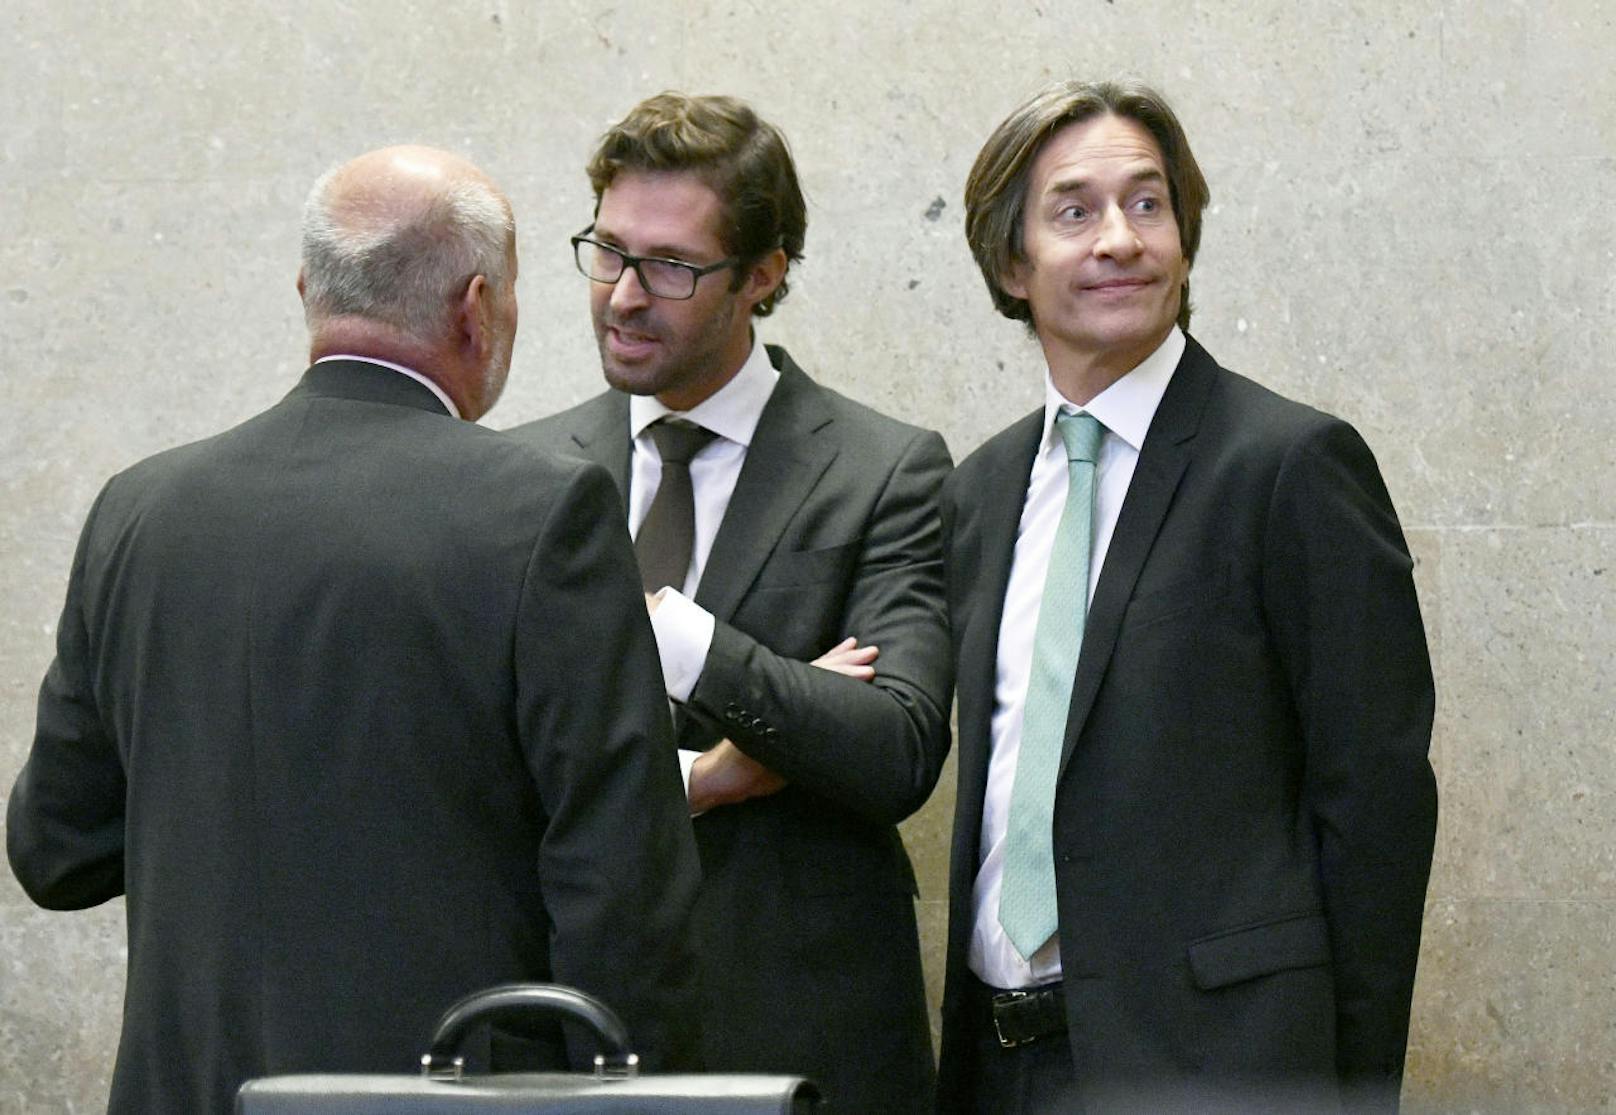 Anwalt Manfred Ainedter, Anwalt Oliver Scherbaum und der Angeklagte Karl Heinz Grasser.